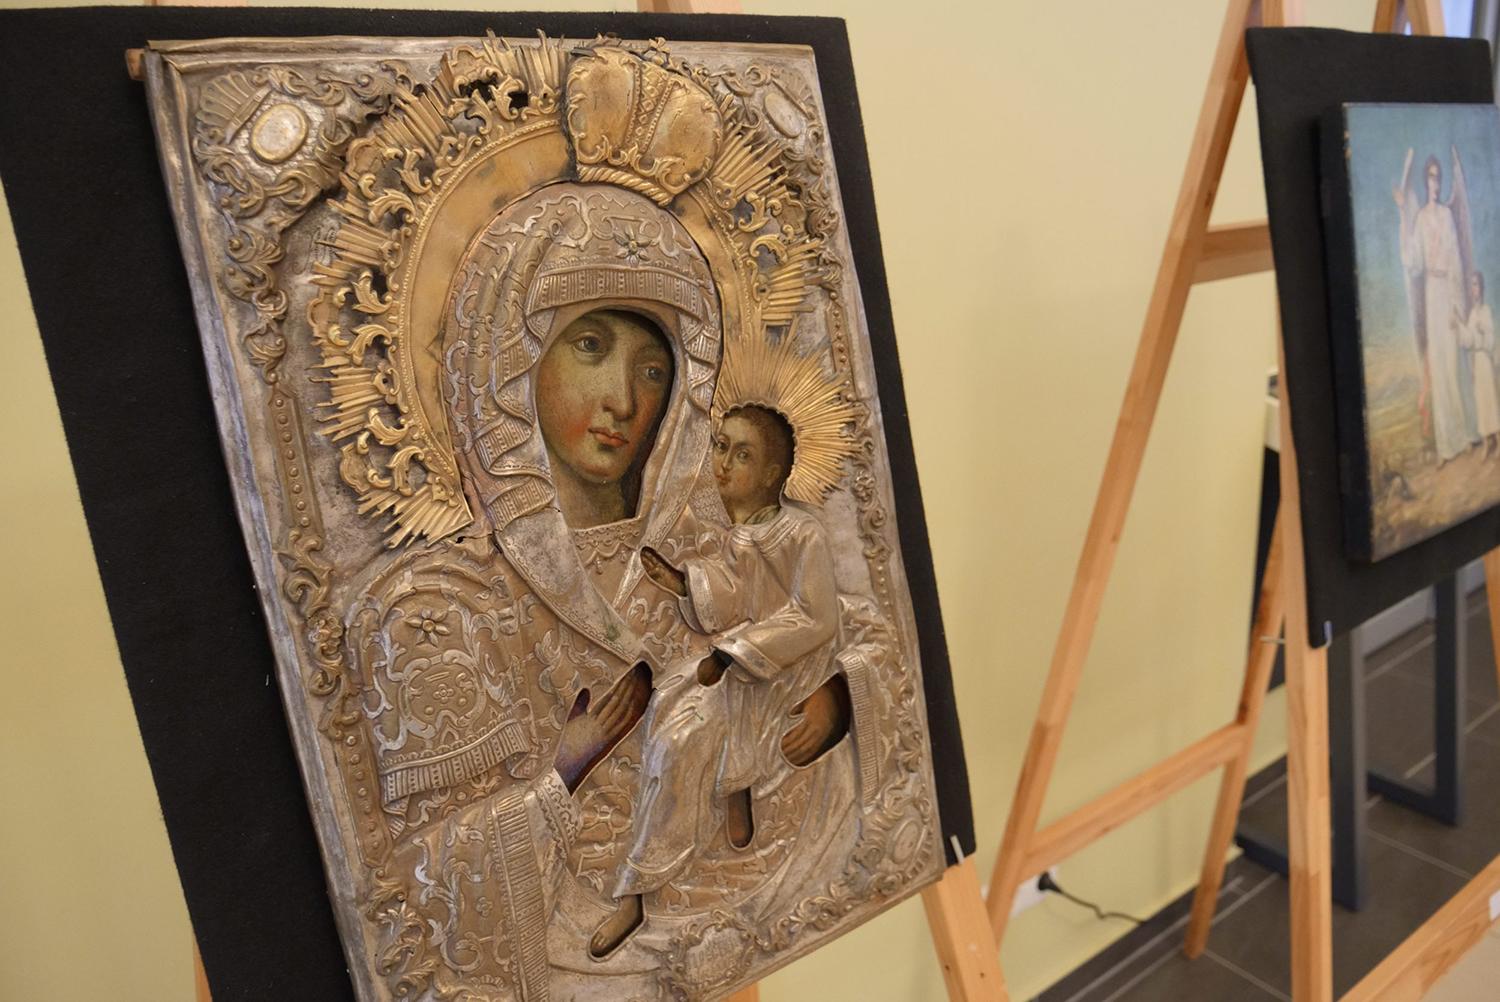 Muziejuje eksponuojama ikonų paroda iš Ukrainos / Ukmergės kraštotyros muziejaus nuotr. Paroda „Jų akys žvelgia į sąžinę“ Ukmergėje veiks iki kovo 13 dienos.